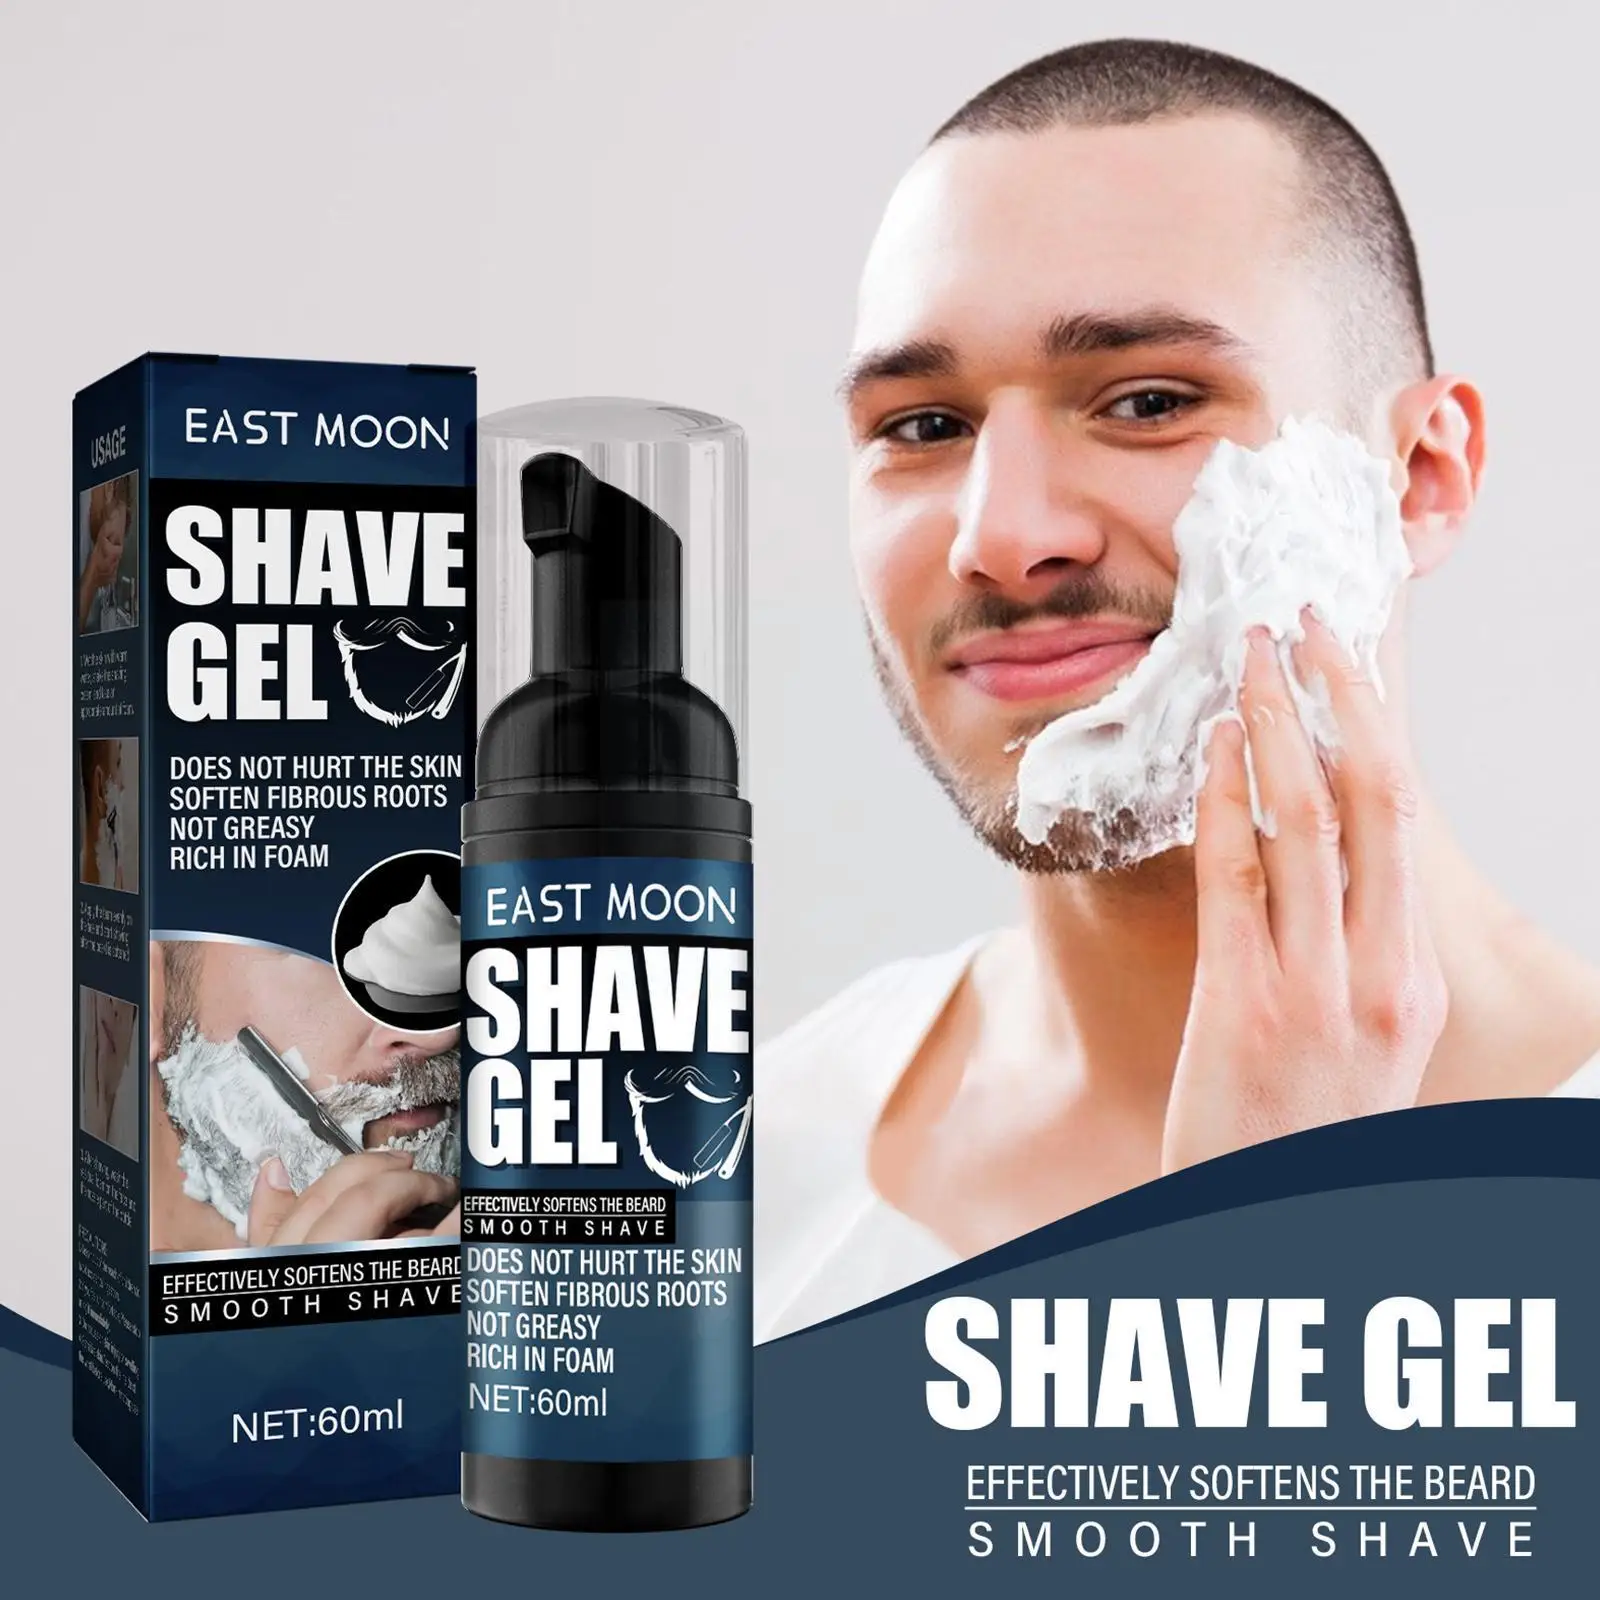 

Крем для бритья P6j1 для мужчин, пена, мягкая, для уменьшения трения бороды вручную, подходит для всех, увлажняющая, пенопластовая, для очищени...